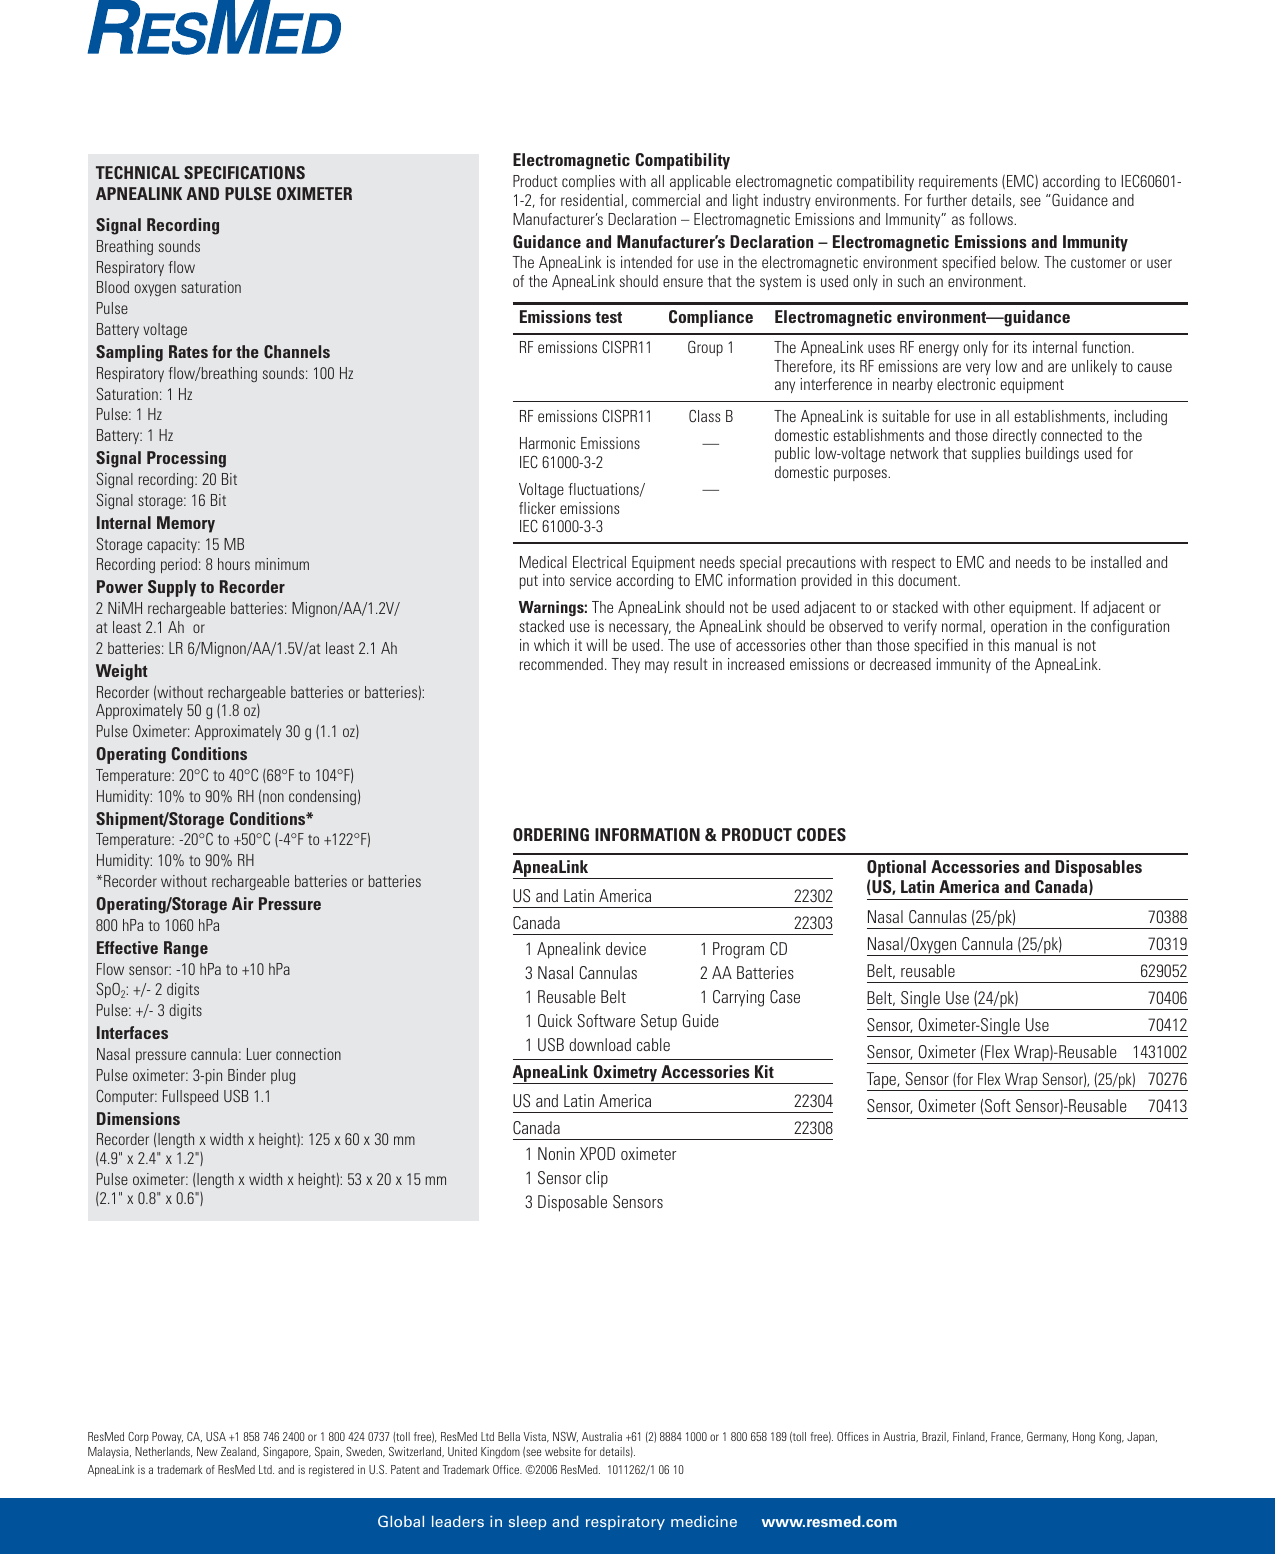 Page 4 of 4 - Resmed Resmed-Sleep-Screening-Tool-Apnealink-Users-Manual- 1011262-1 Apnealink Broch  Resmed-sleep-screening-tool-apnealink-users-manual